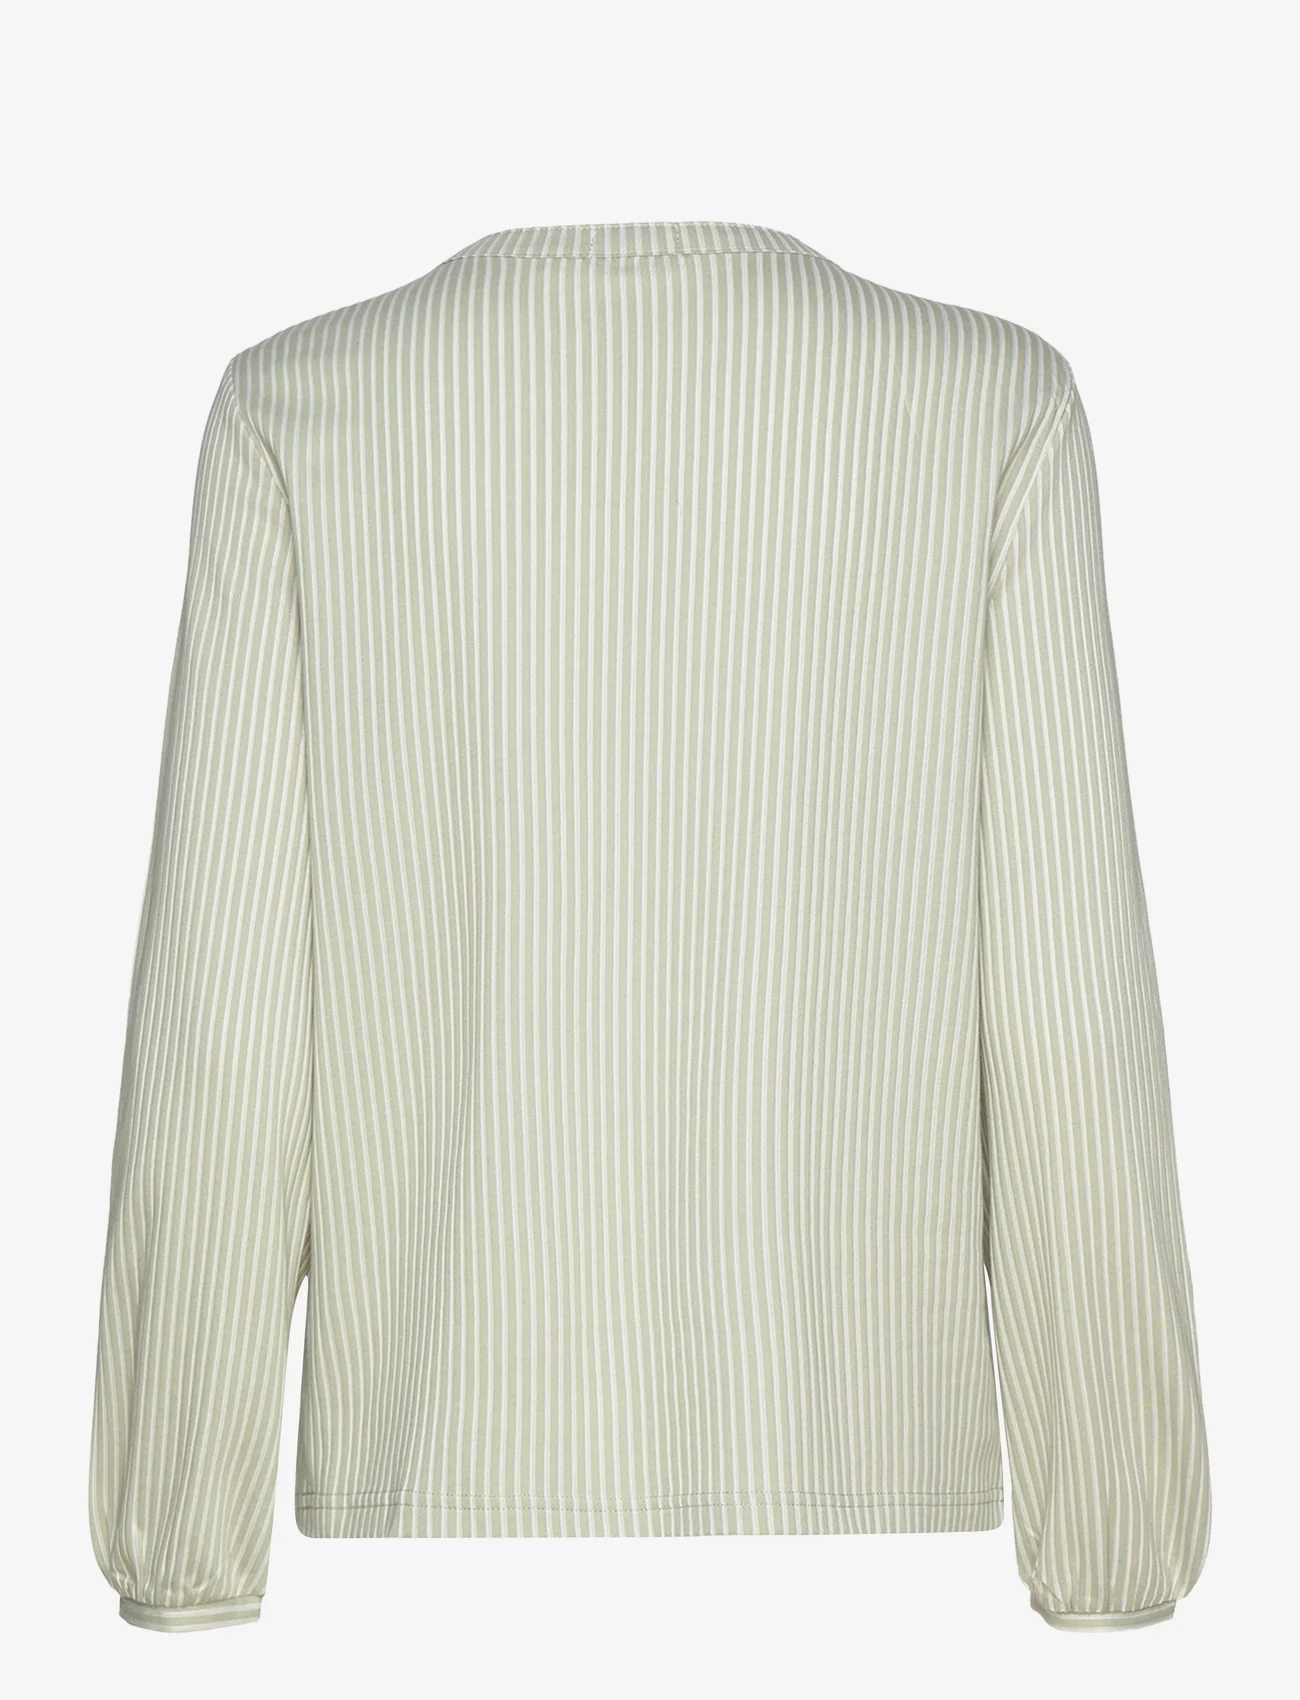 Tom Tailor - T-shirt blouse vertical stripe - langärmlige blusen - desert green white thin stripe - 1